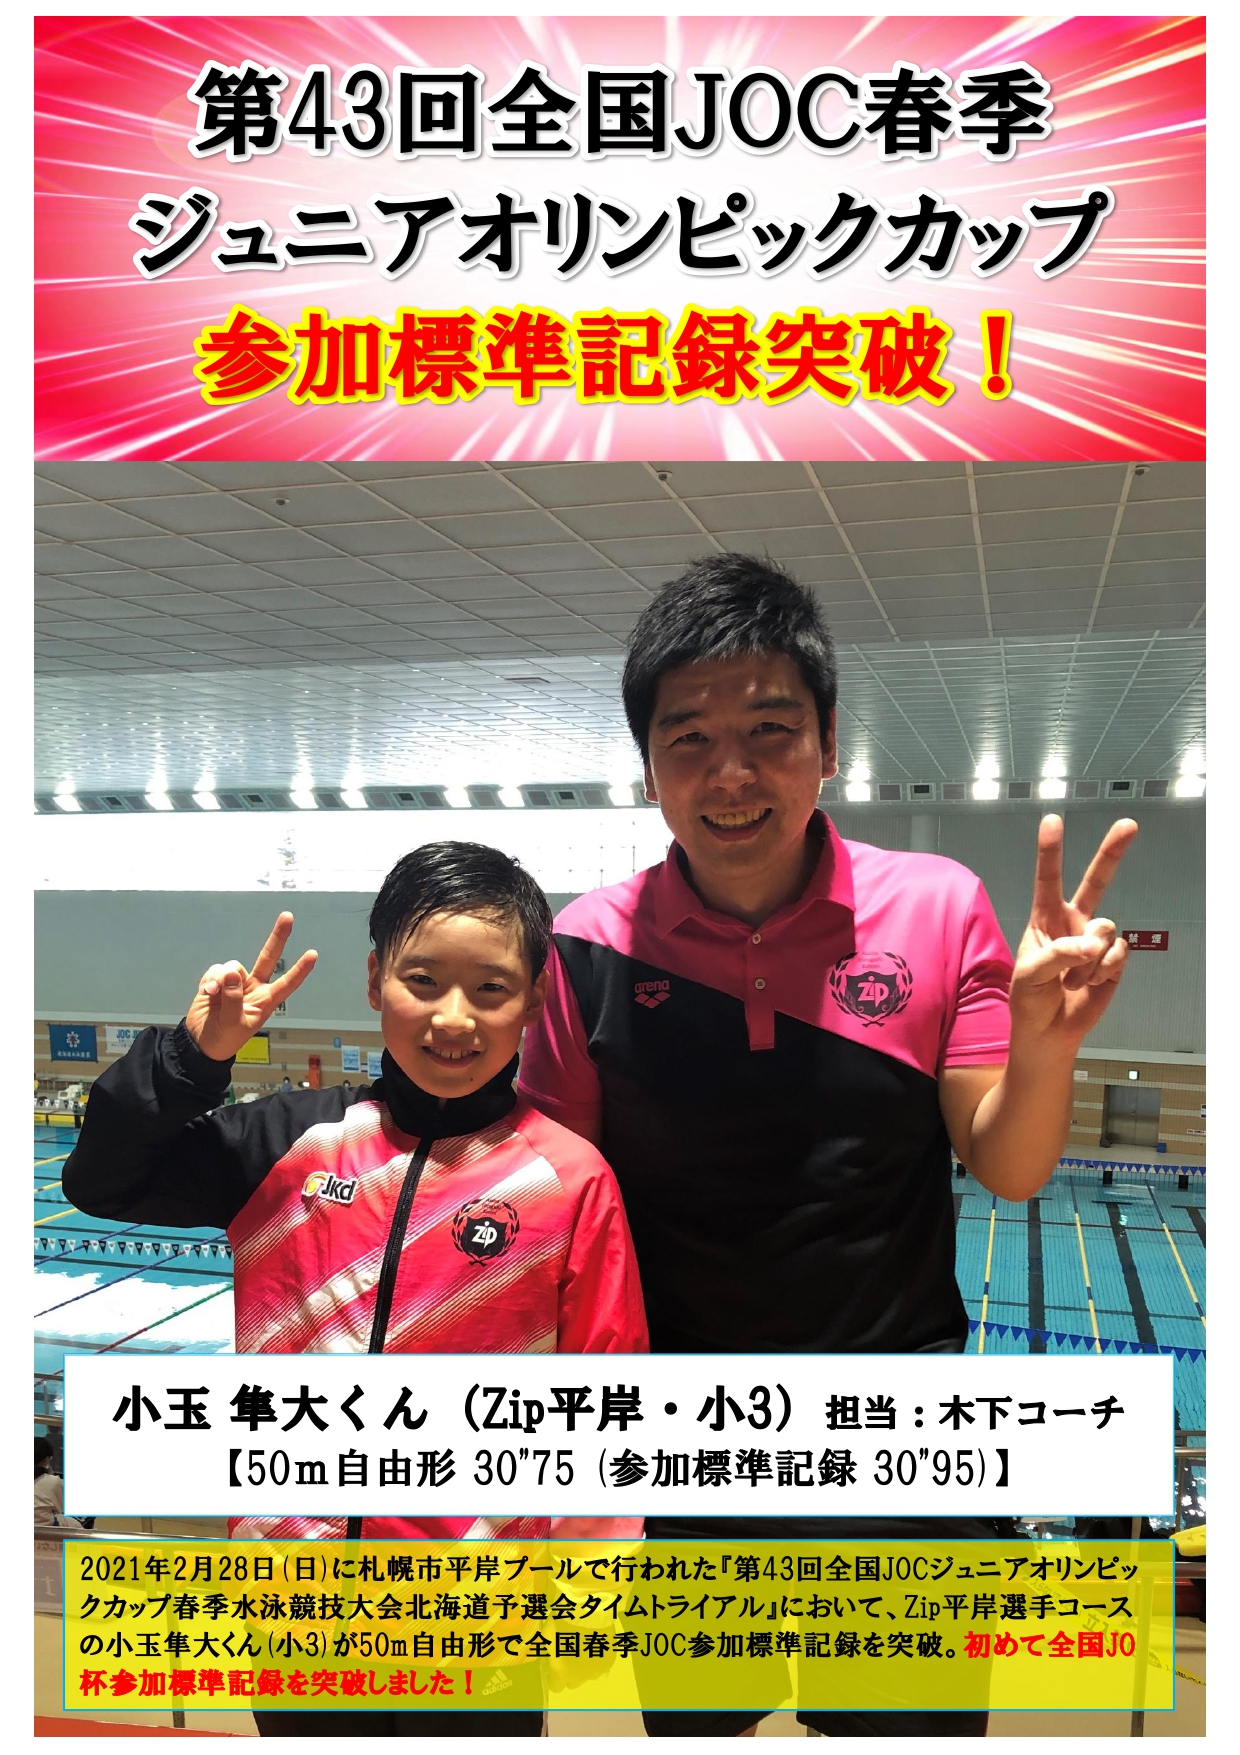 祝日 水泳 競泳 JO jo ジュニアオリンピック カップ 全国大会 joc JOC